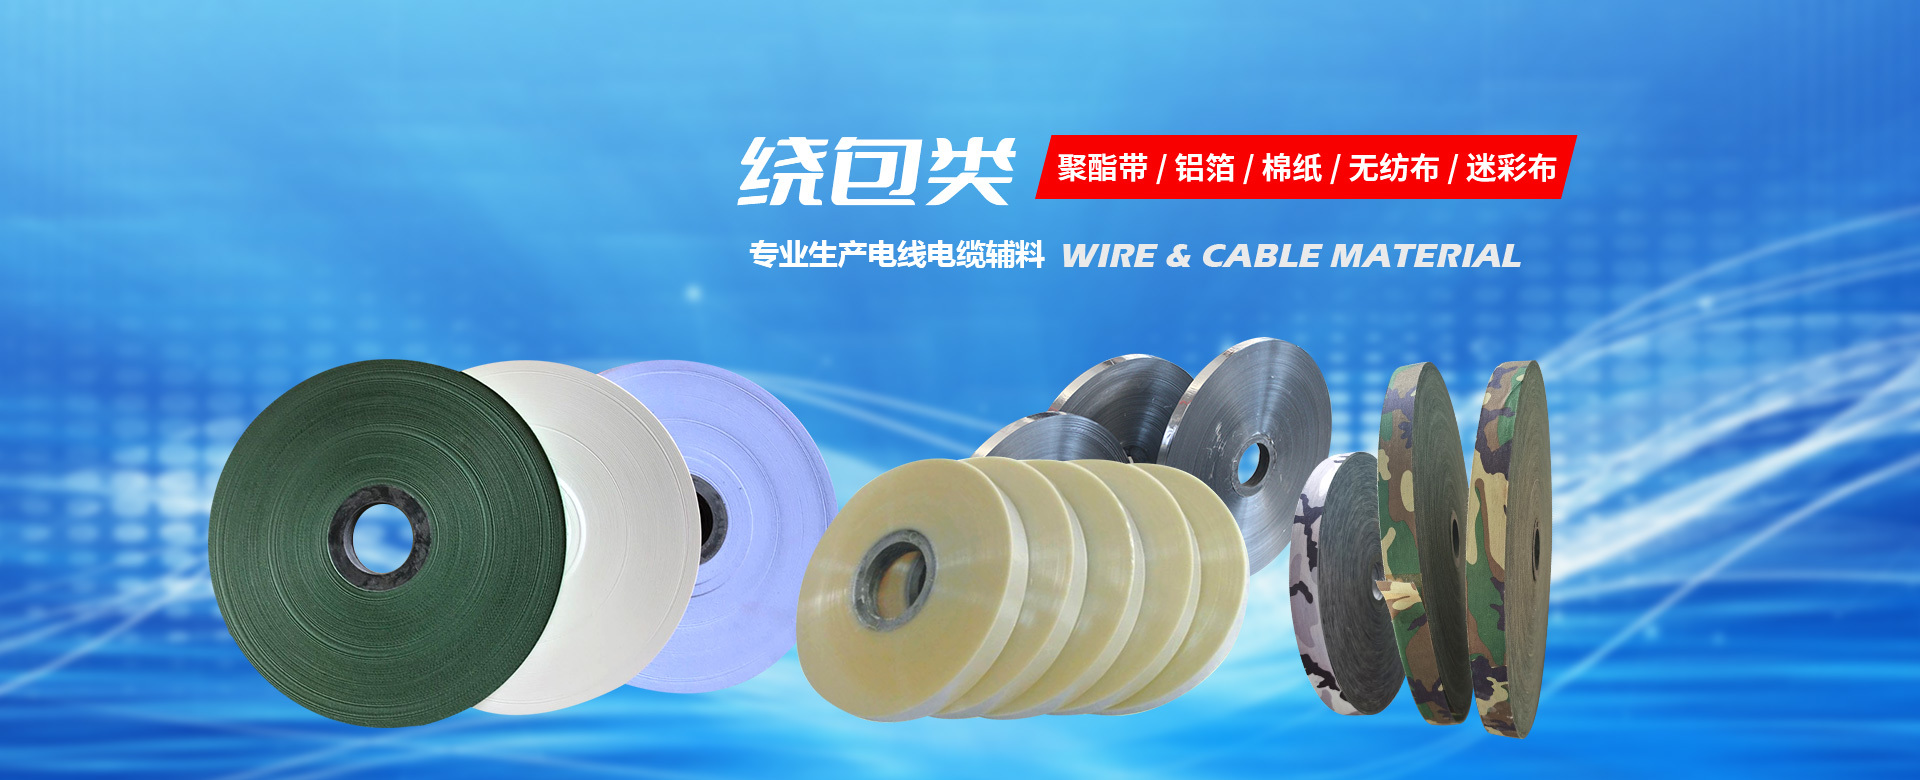 惠州市豫华电线电缆材料有限公司